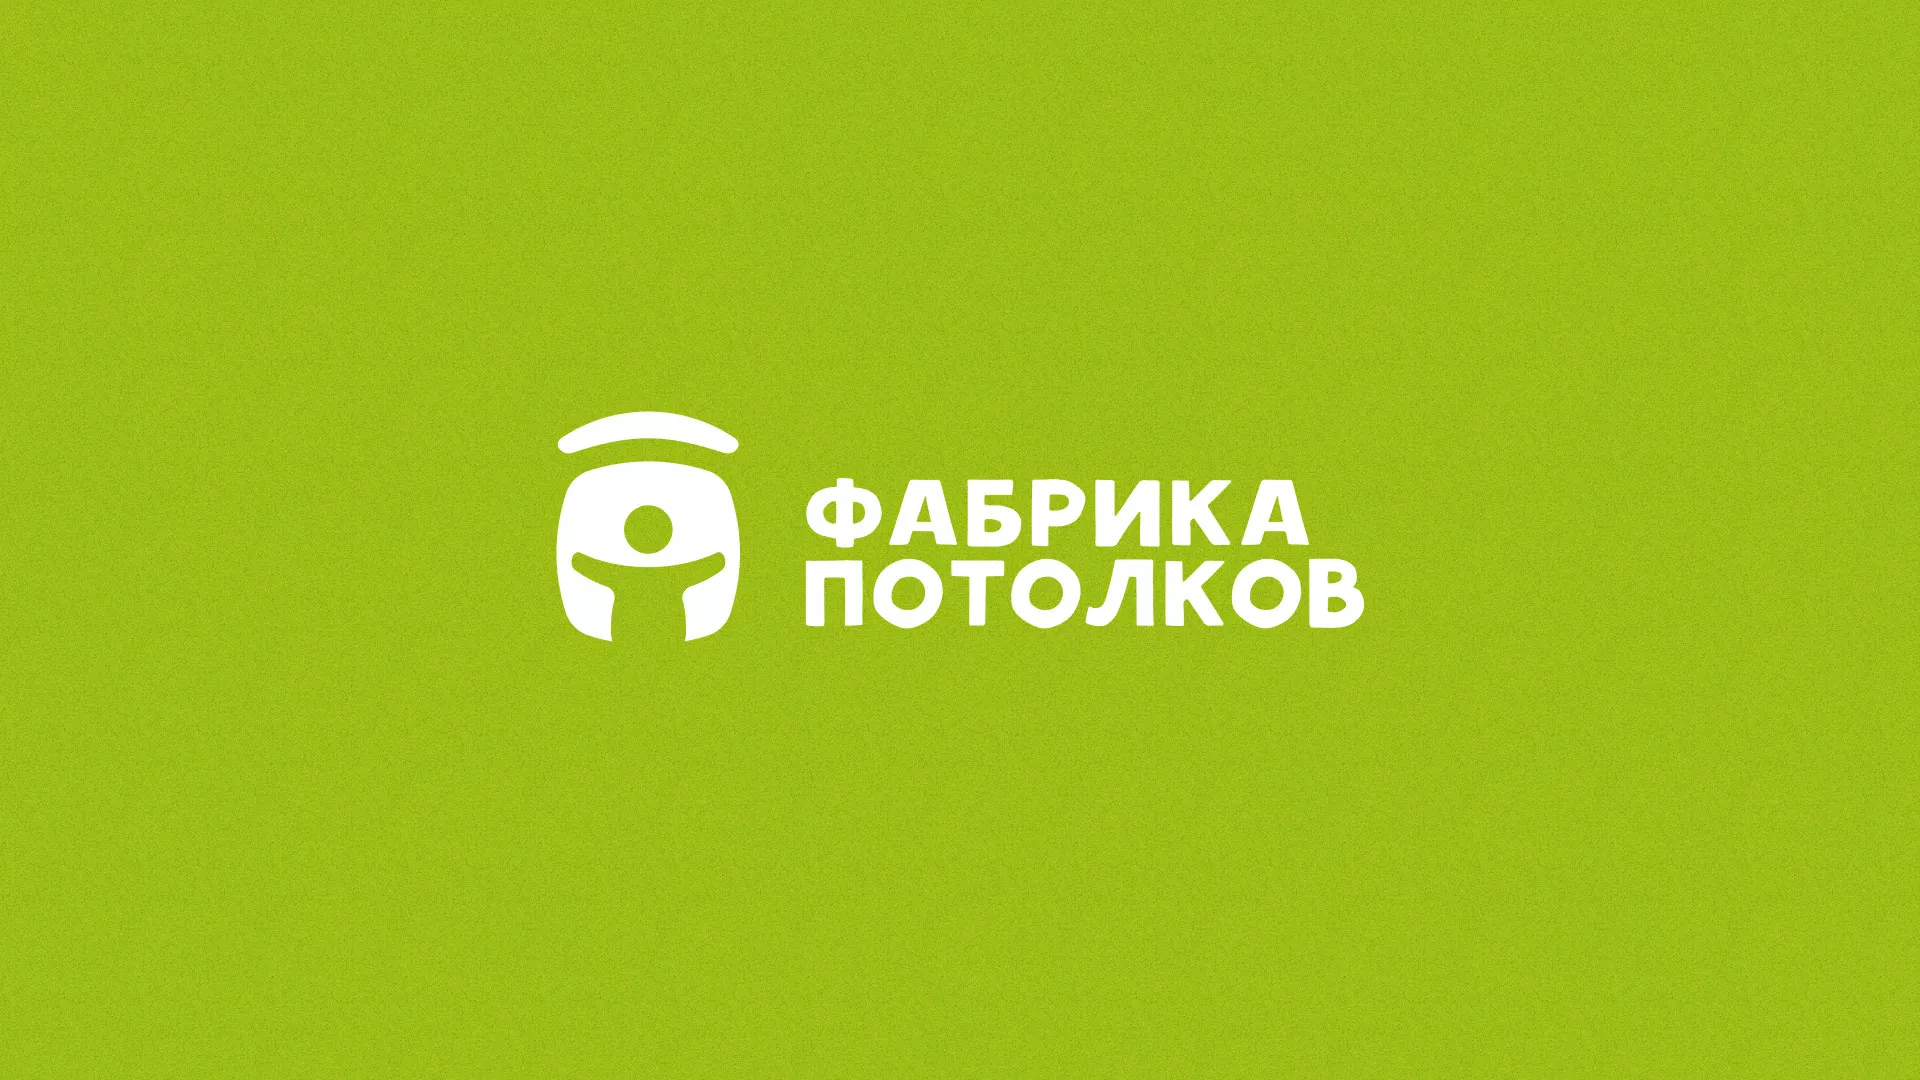 Разработка логотипа для производства натяжных потолков в Орехово-Зуево